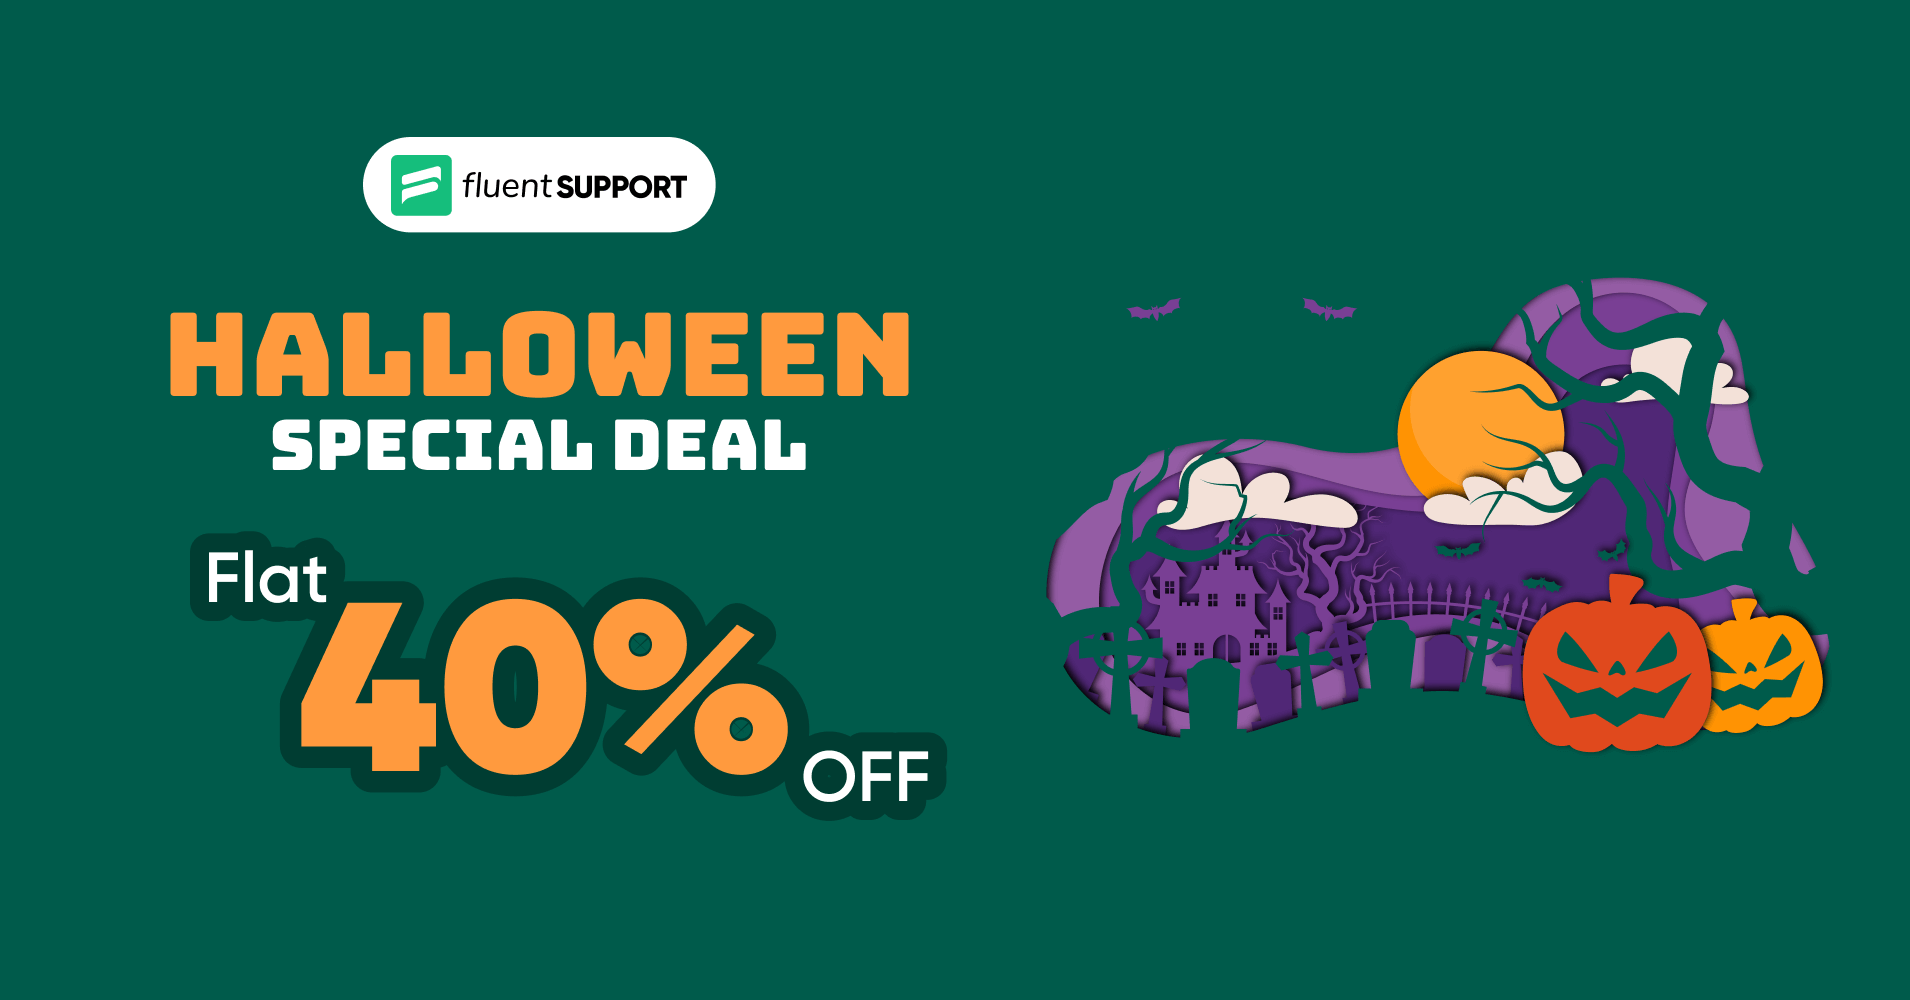 Fluent Support halloween deal